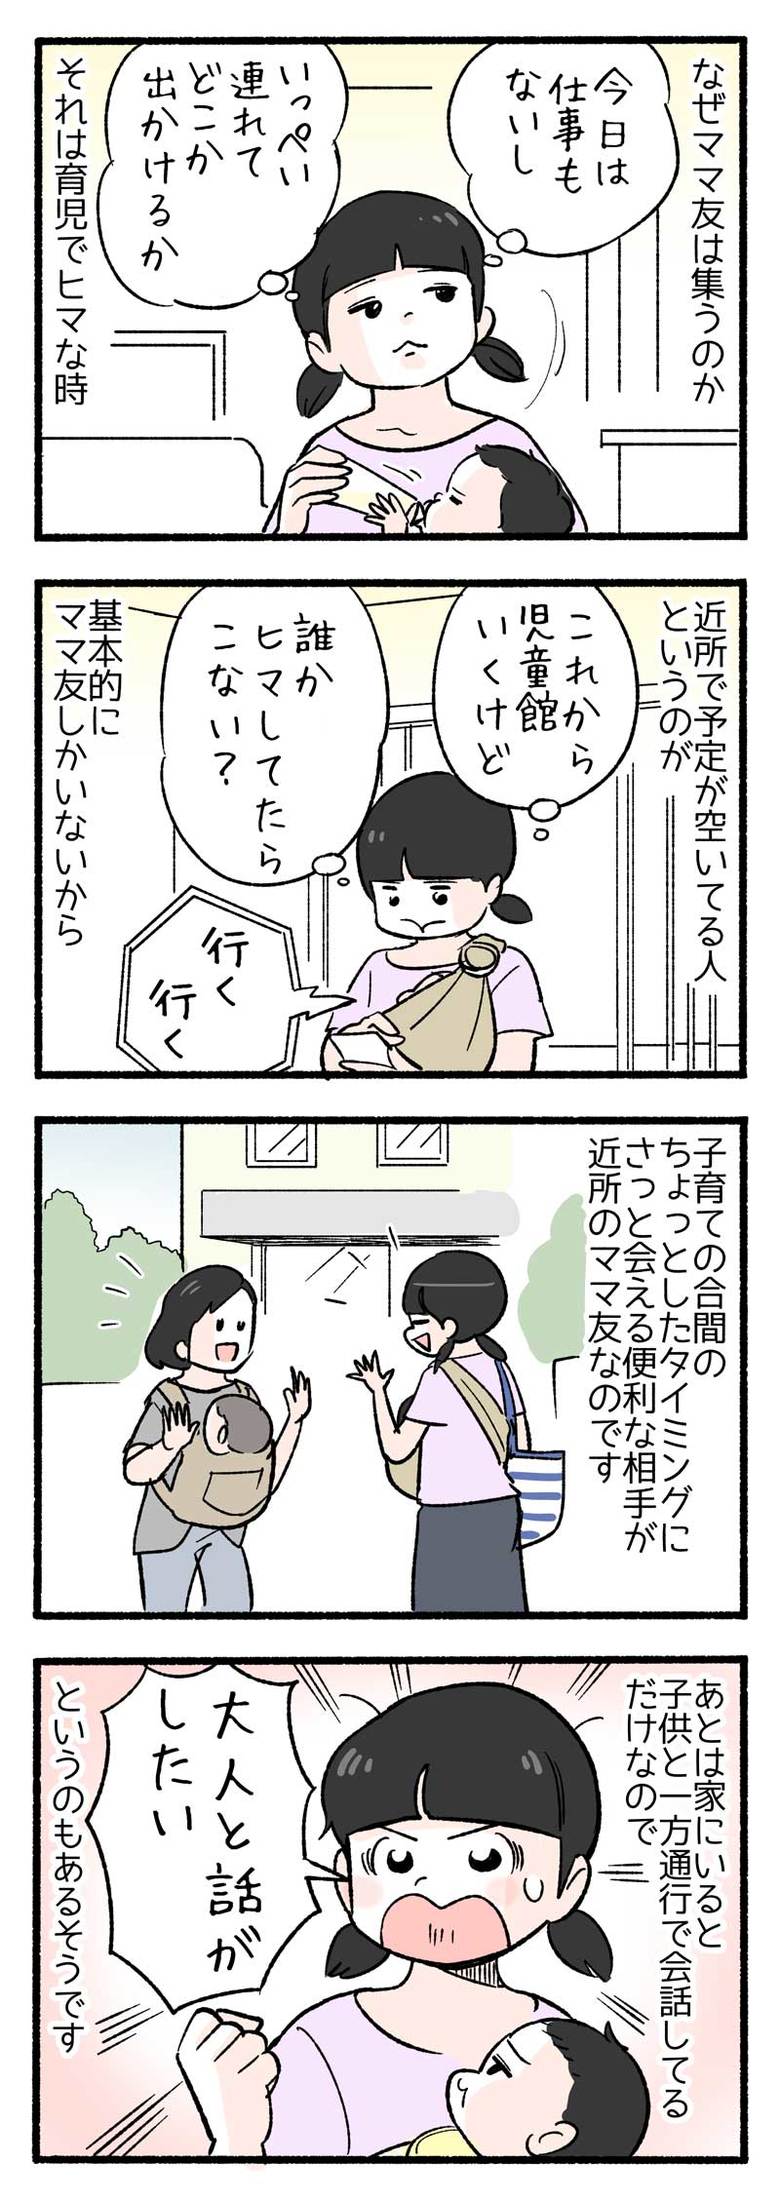 manga-nihipapa14_4